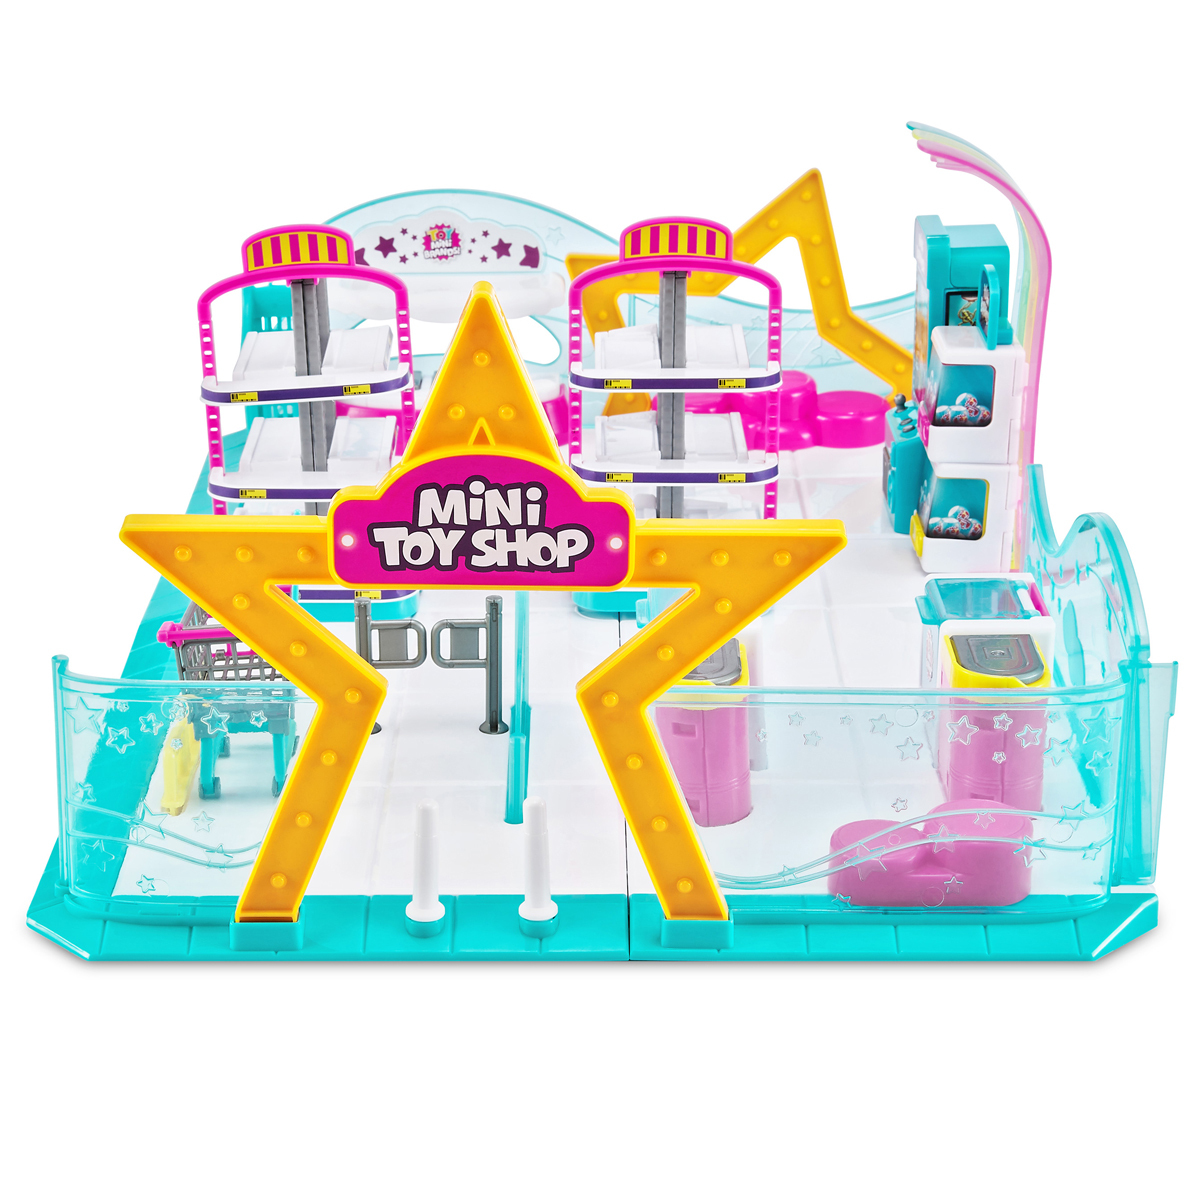 5 Surprise Toy Mini Brands Toy Shop Playset by ZURU (Series 2)